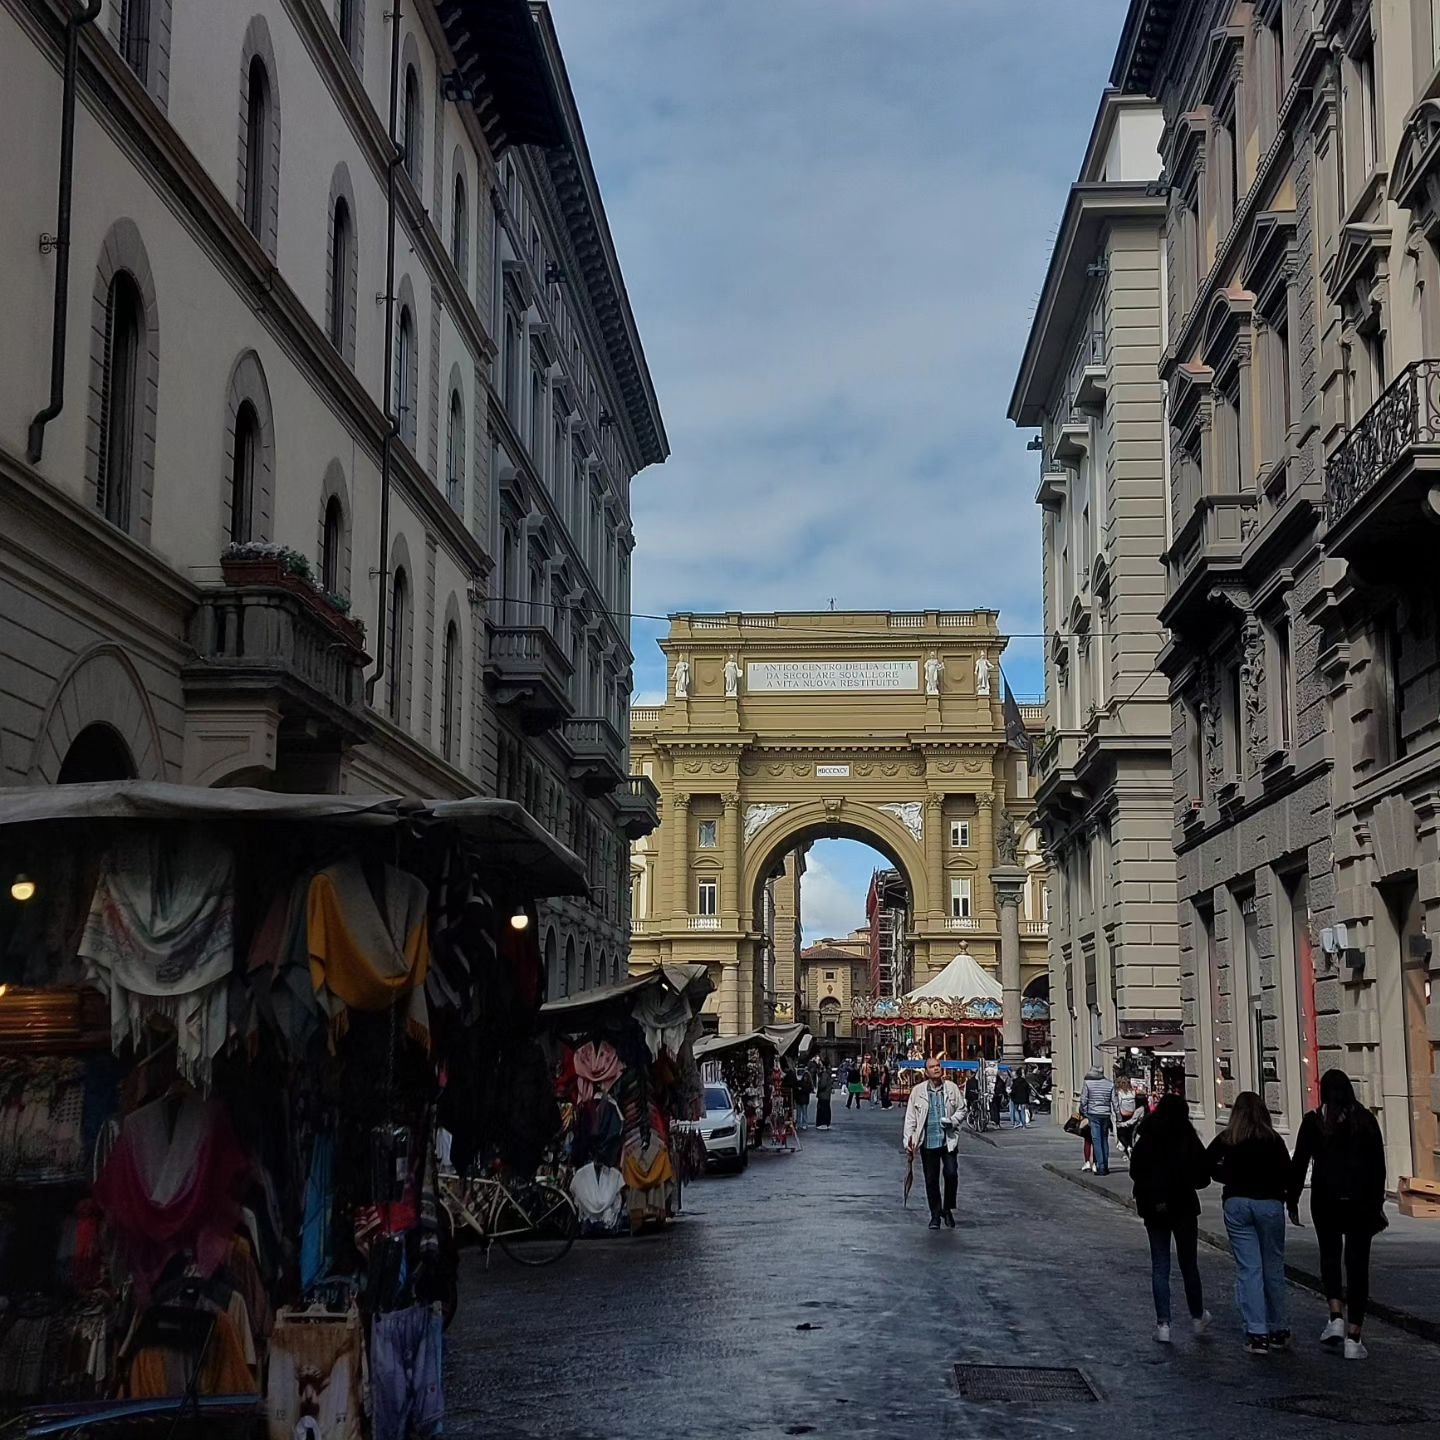 A day spent wandering the Uffizi. 🎨

#arthistory #artgallery